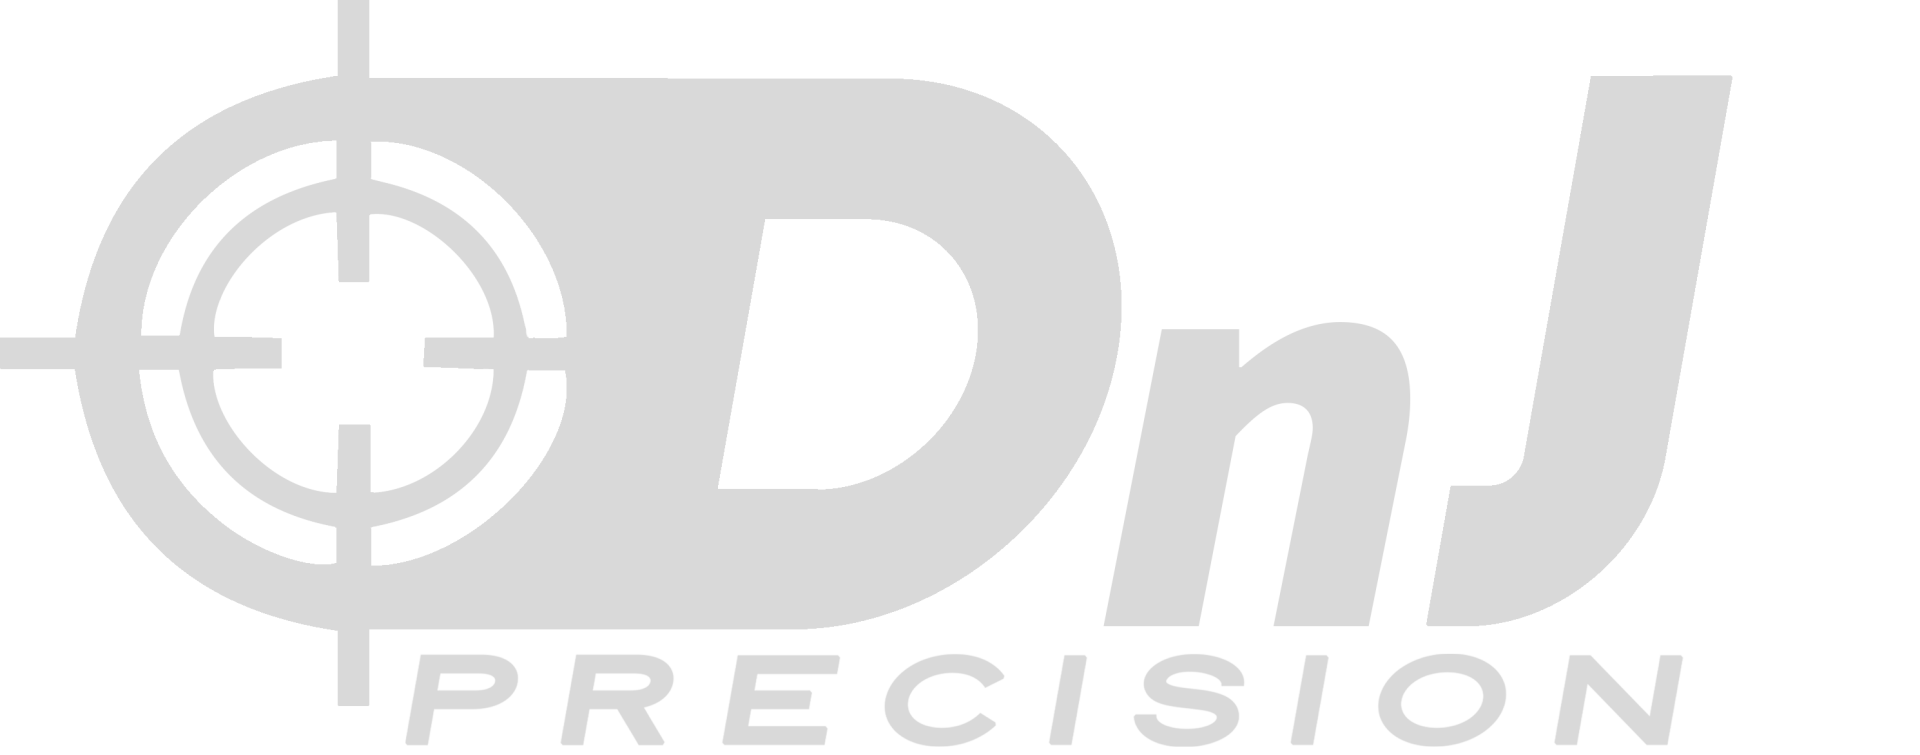 DnJ Precision Logo In Grey